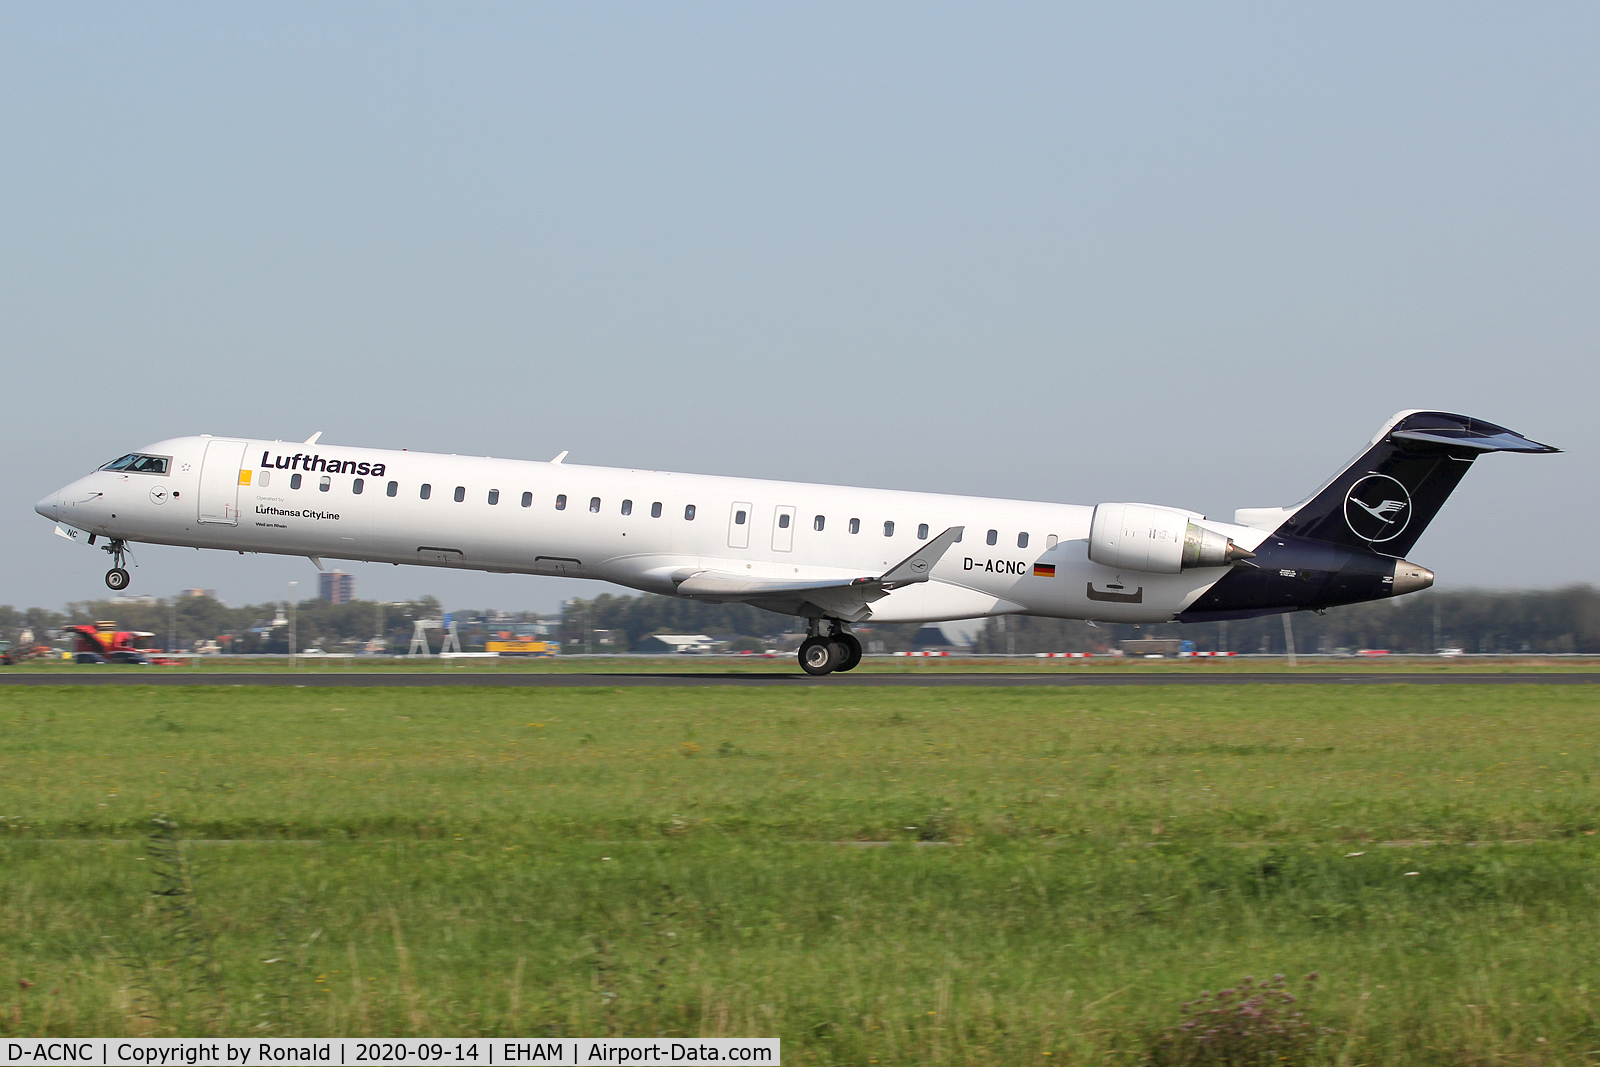 D-ACNC, 2009 Bombardier CRJ-900LR (CL-600-2D24) C/N 15236, at spl